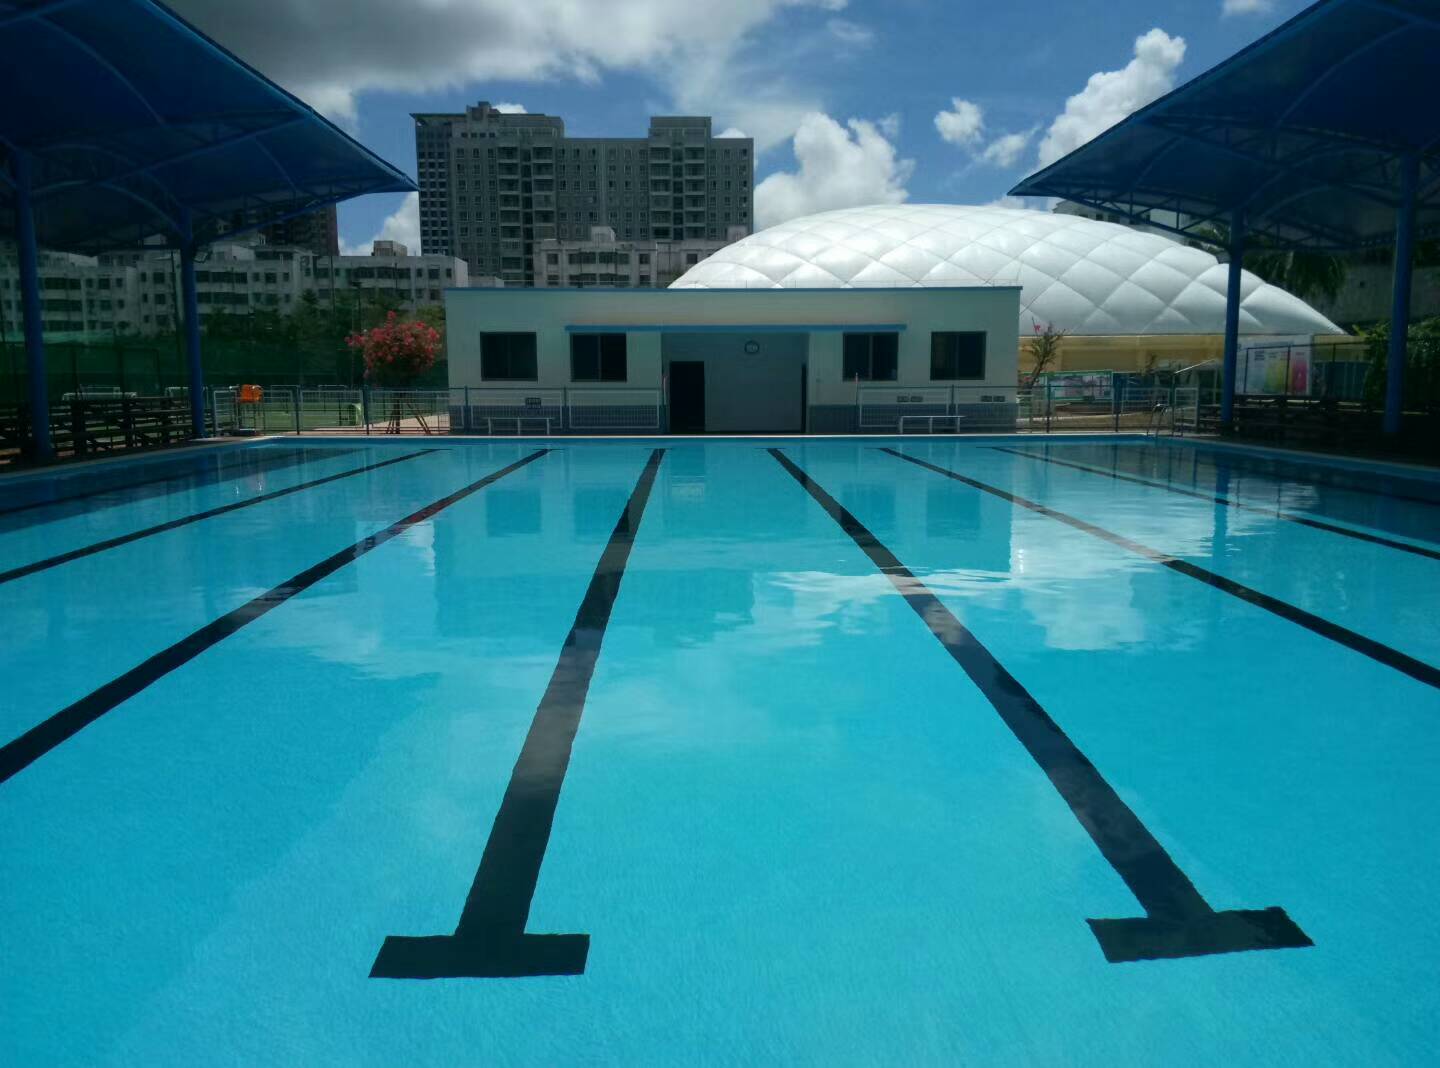 中小学生游泳教育被列入市县政府考核指标 部分学校泳池投入使用